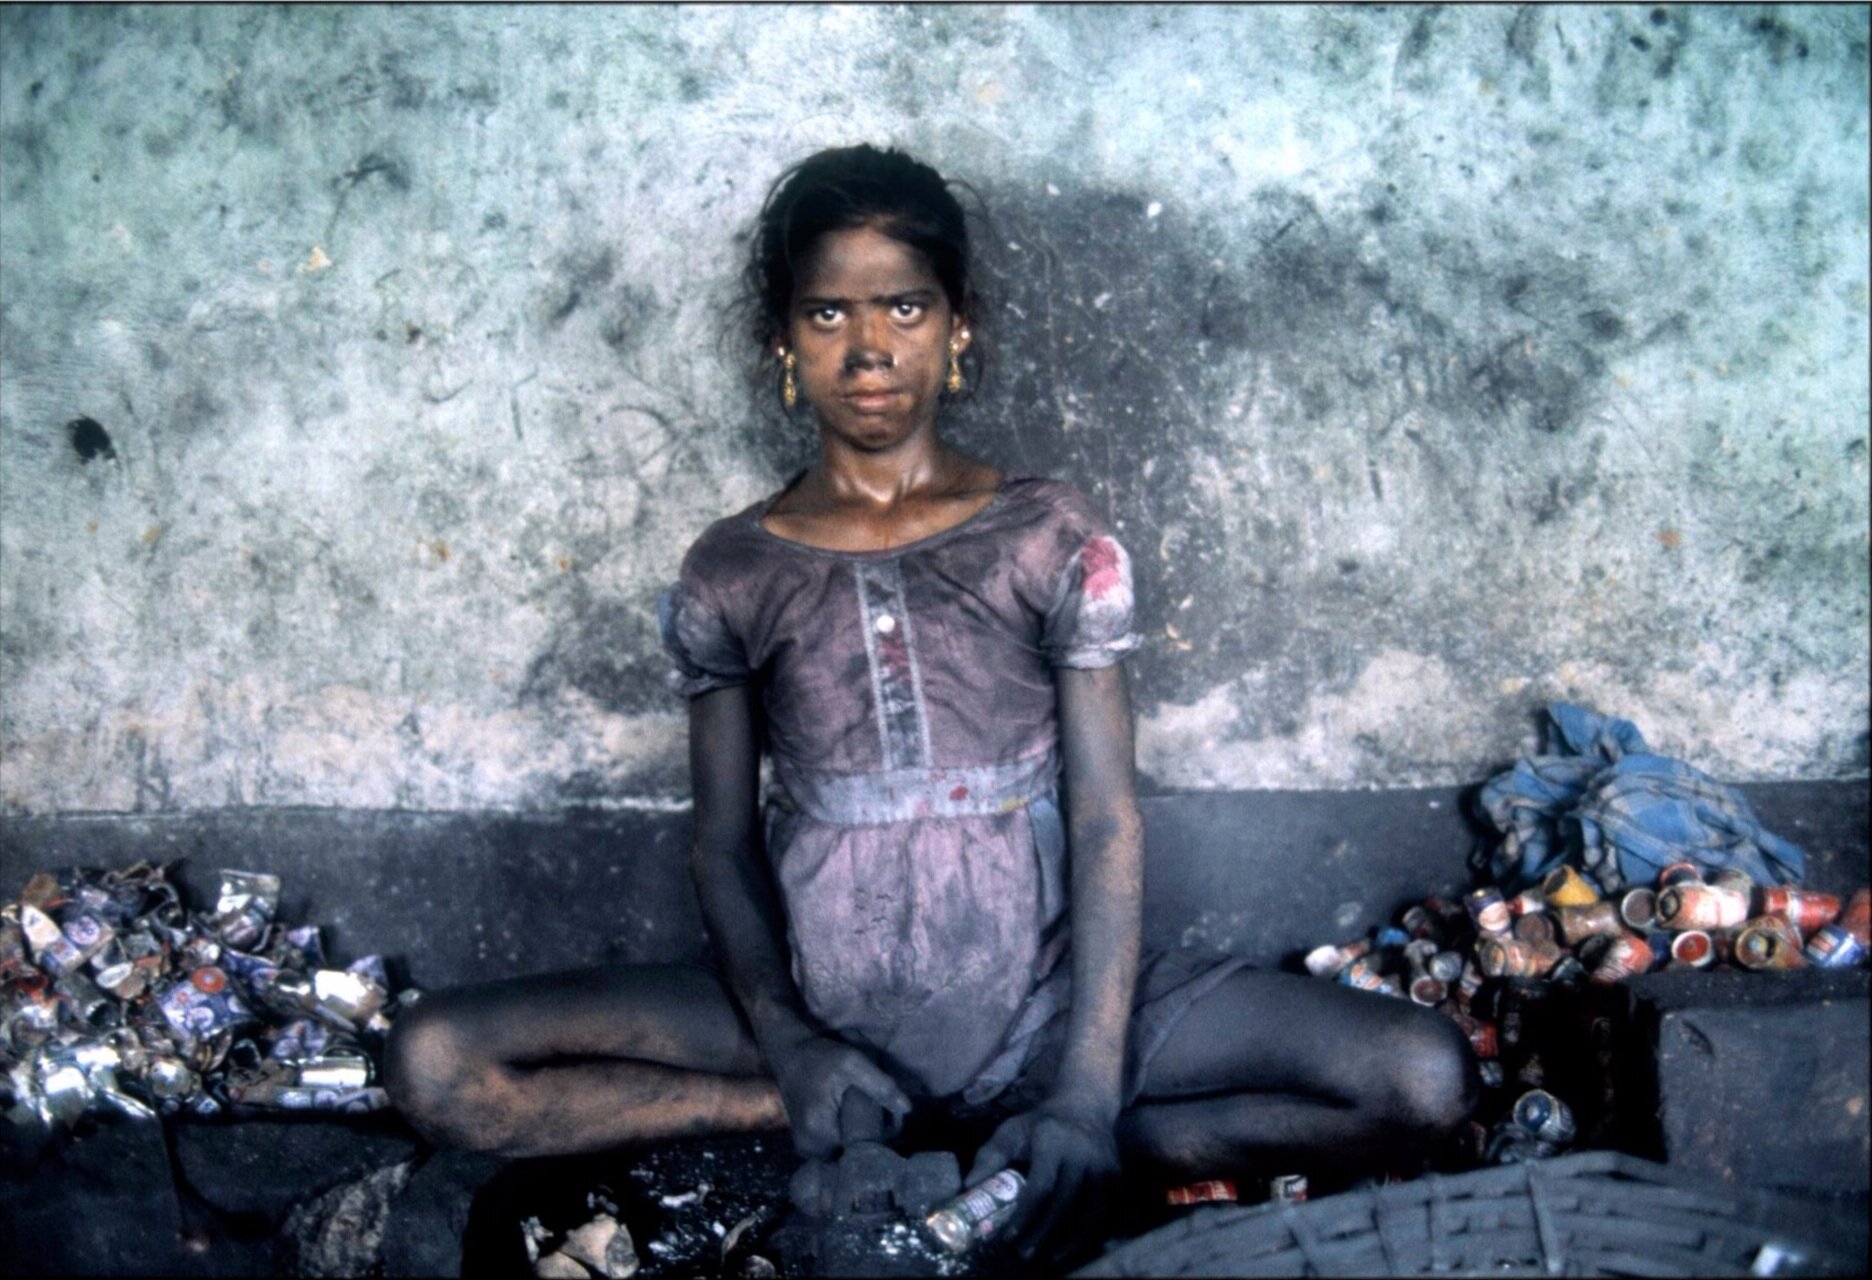  The Battery Girl of Calcutta; Dhobiya Tala Slum 